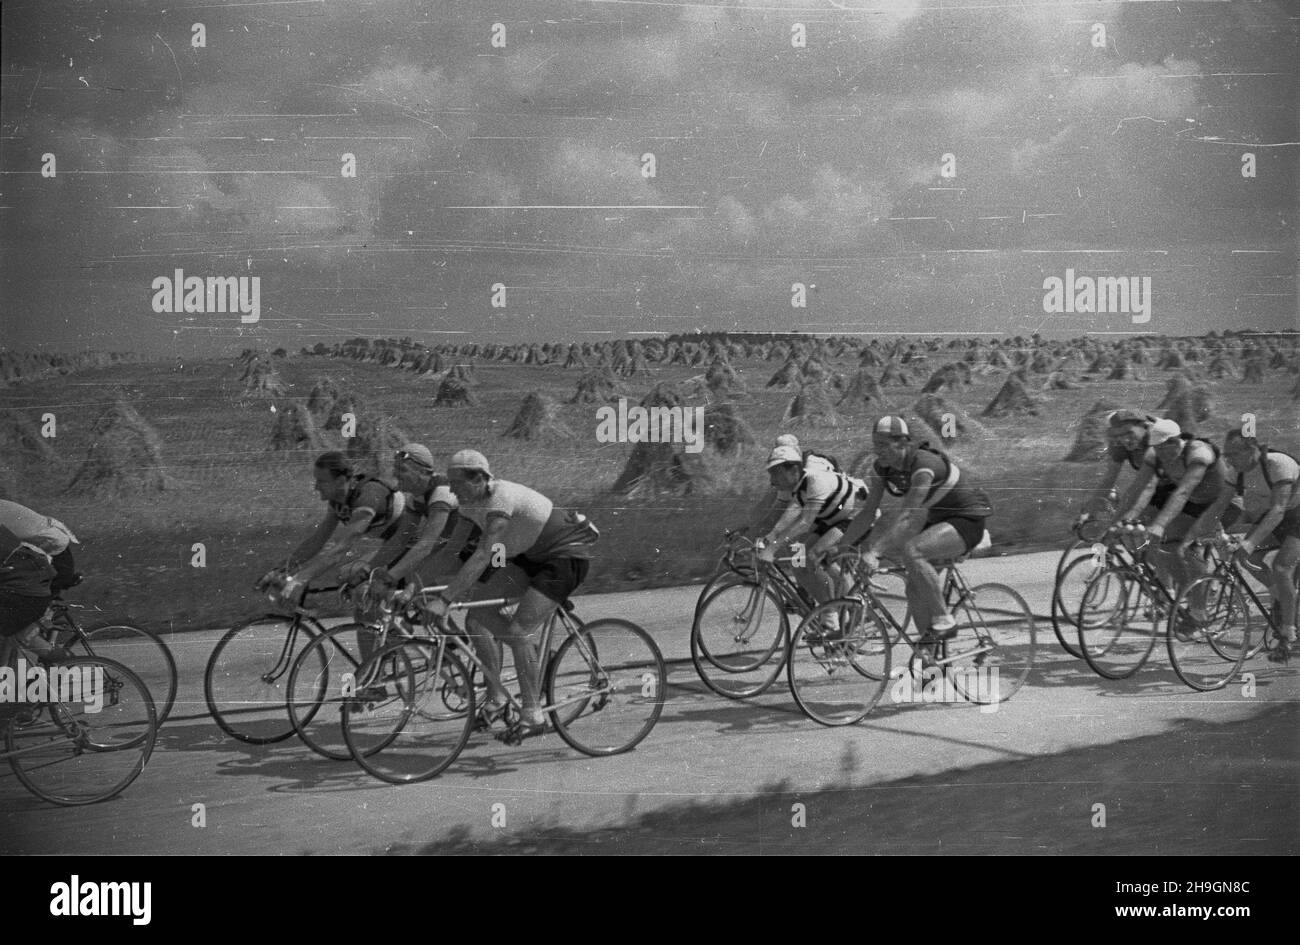 Polska, 1948-06-29. VII Wyœcig Kolarski Dooko³a Polski (Tour de Pologne) odbywa³ siê w dniach 22 czerwca - 4 lipca. Wystartowa³o 71 zawodników, przyjecha³y reprezentacje Czechos³owacji, Szwecji, Wêgier. Nz. kolarze na licz¹cej 170 km trasie 7. etapu z Wroc³awia do Bytomia. mw  PAP      Poland, June 29, 1948. The 7th Tour de Pologne cycling race was held on 22 June-4 July with 71 contenders taking part, including teams from Czechoslovakia, Sweden, Hungary. Pictured: cyclists during the 170-km 7th stage from Wroclaw to Bytom.   mw  PAP Stock Photo